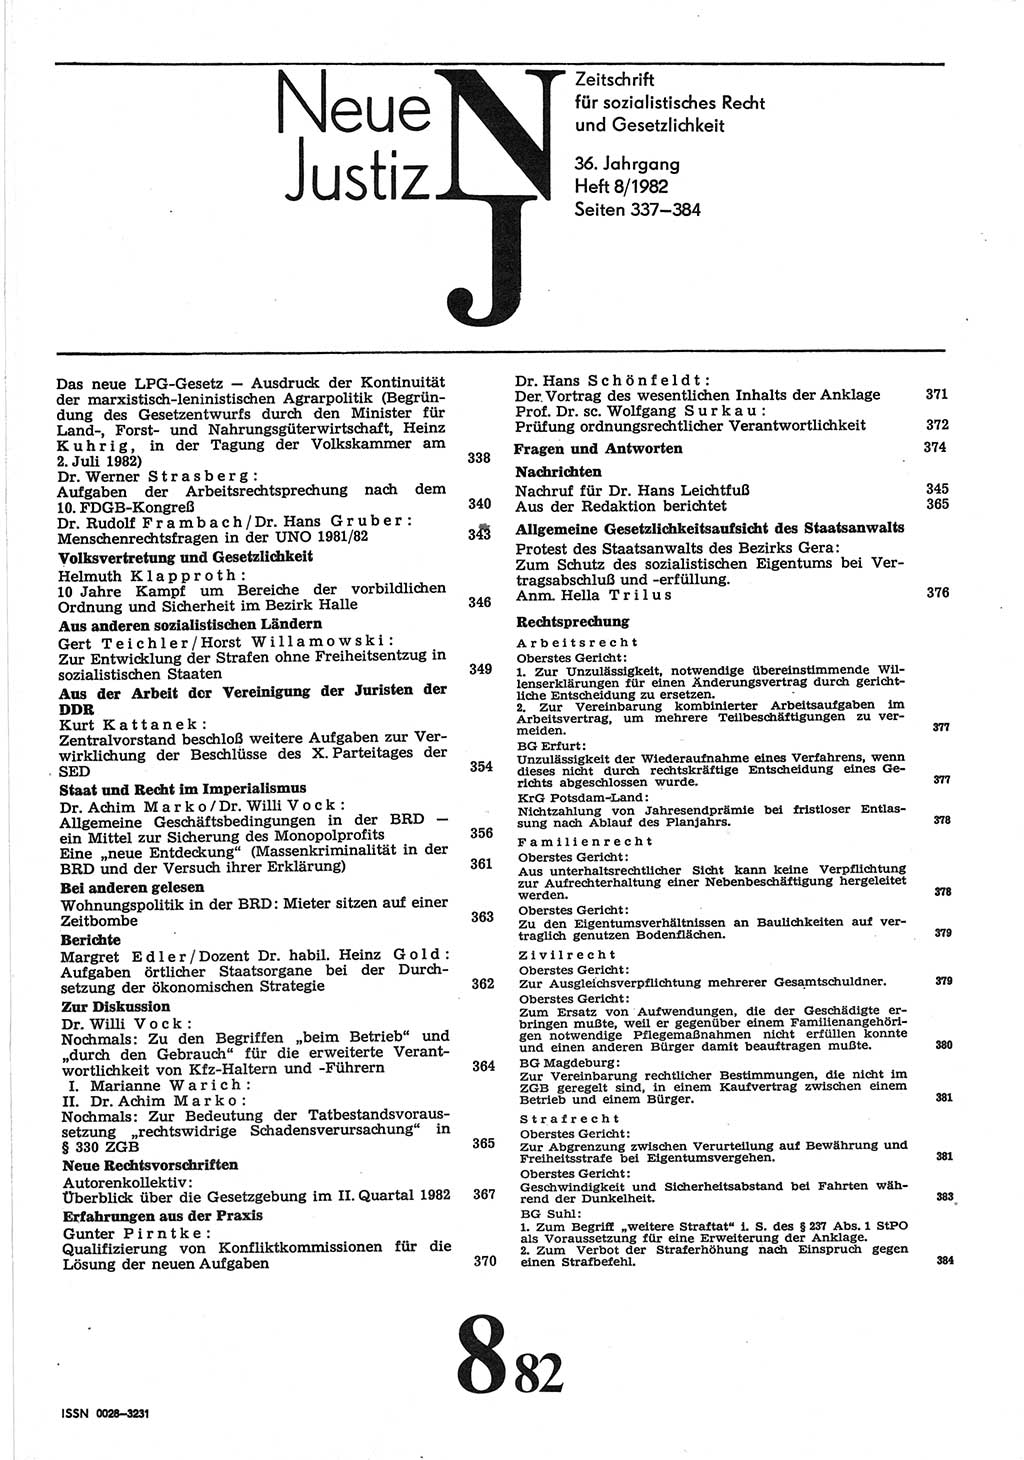 Neue Justiz (NJ), Zeitschrift für sozialistisches Recht und Gesetzlichkeit [Deutsche Demokratische Republik (DDR)], 36. Jahrgang 1982, Seite 337 (NJ DDR 1982, S. 337)